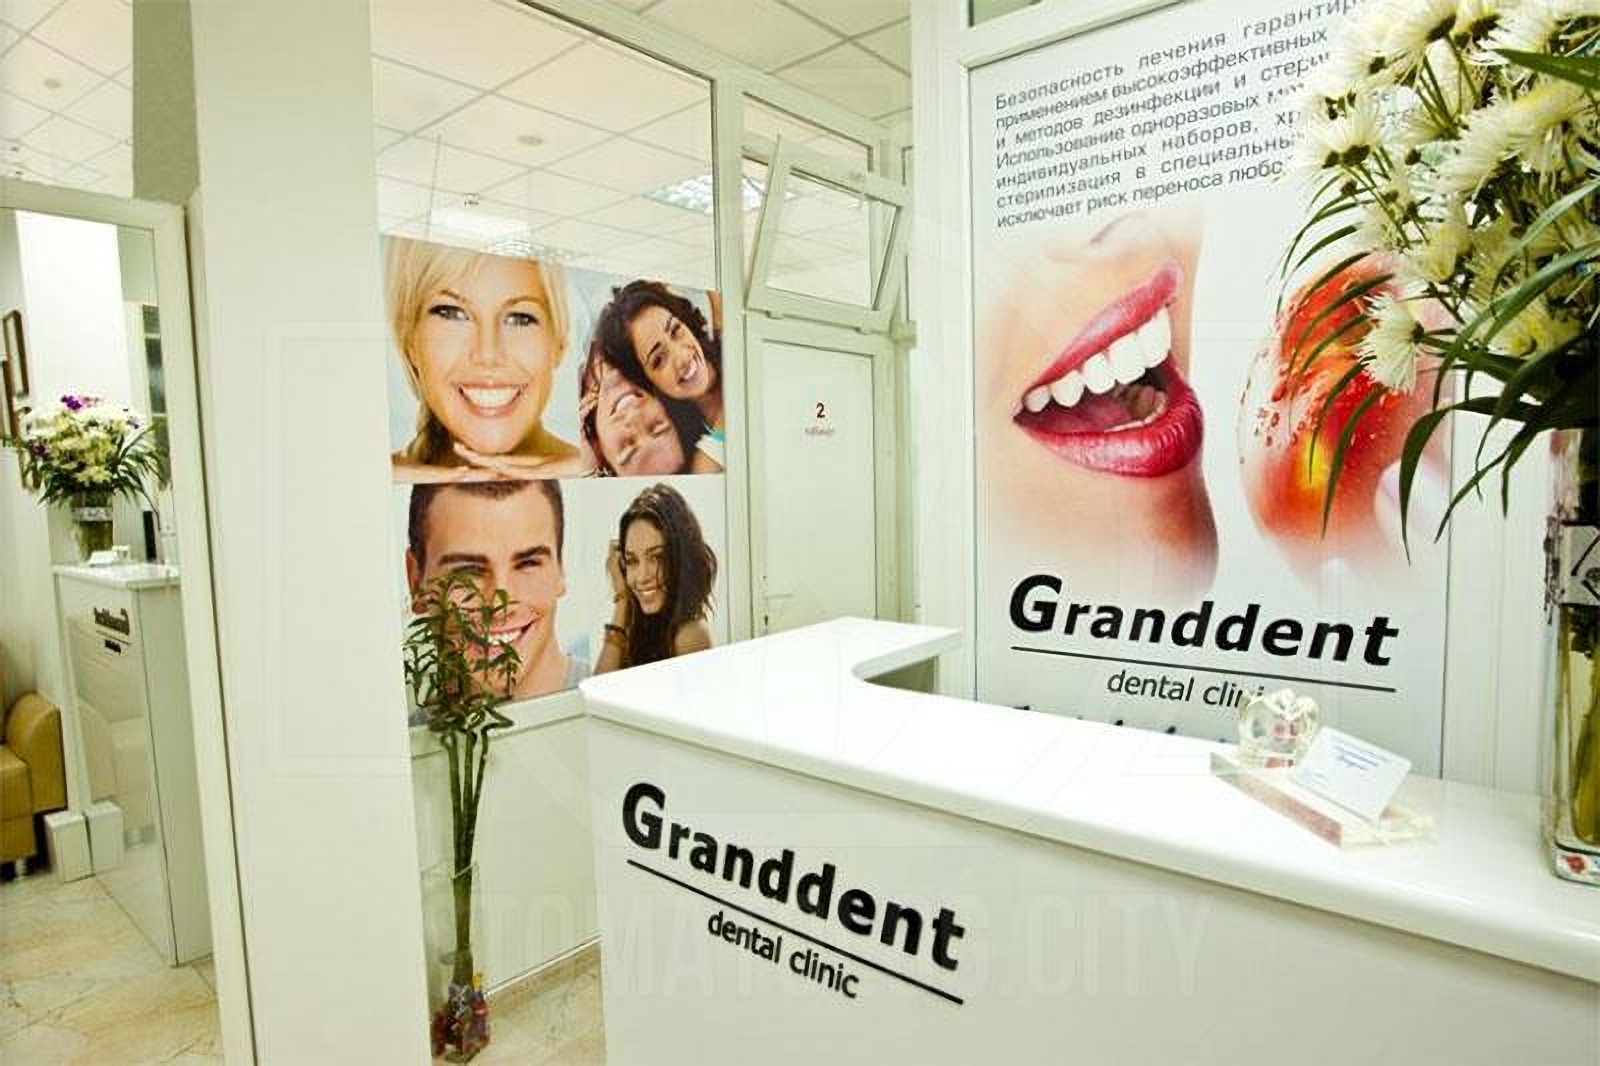 Recepcjonista administrator w klinice stomatologicznej Granddent w Odessie Ukraina